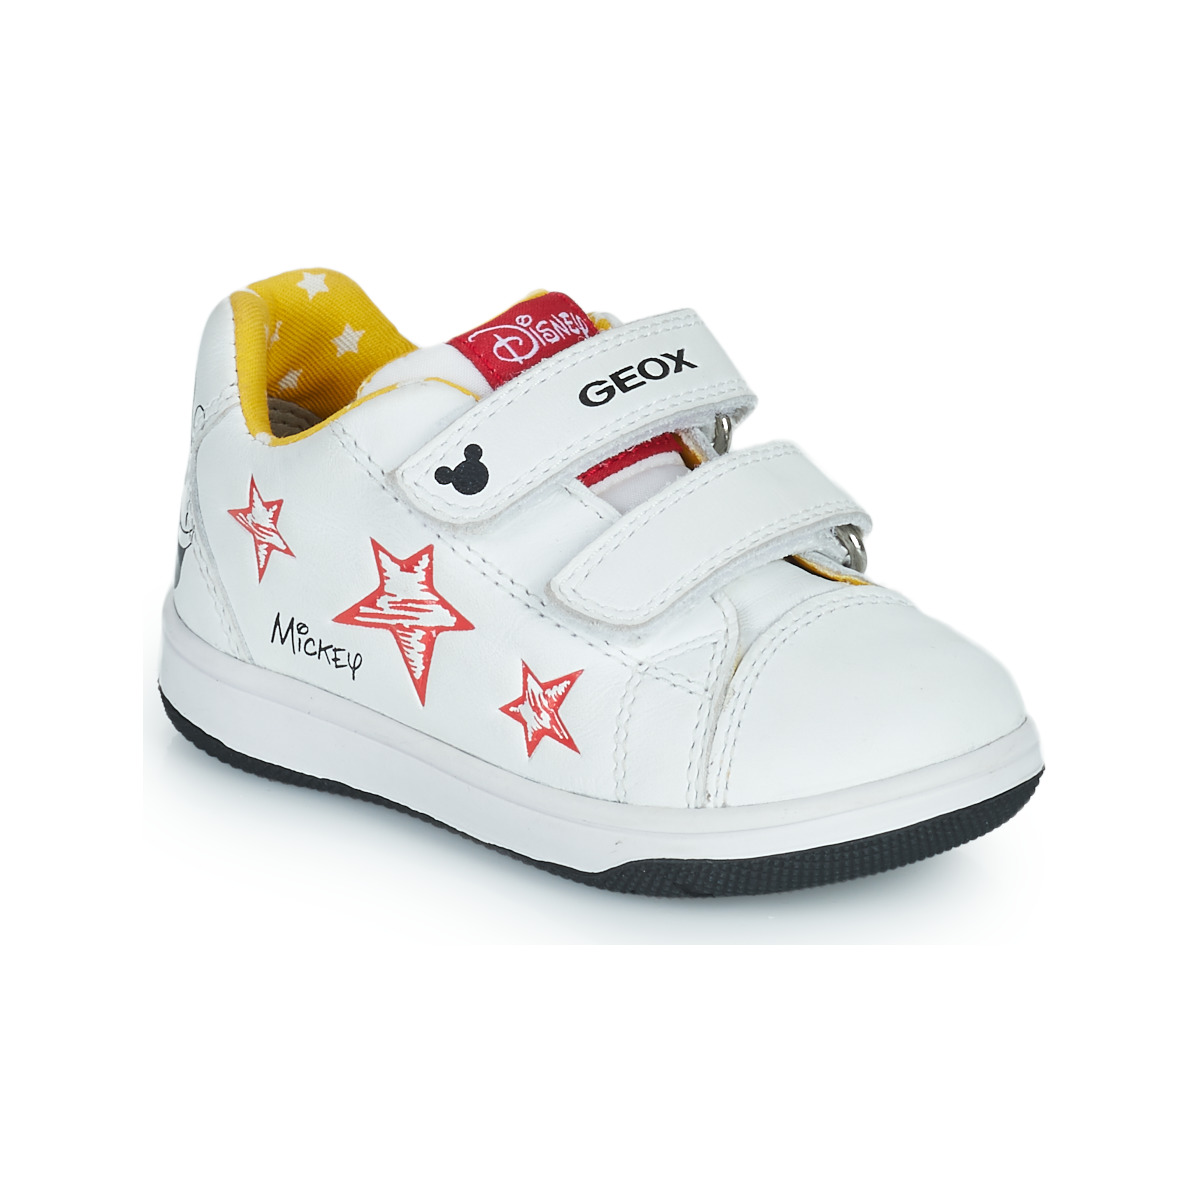 Sapatos Criança Sapatilhas Geox B NEW FLICK BOY Branco / Vermelho